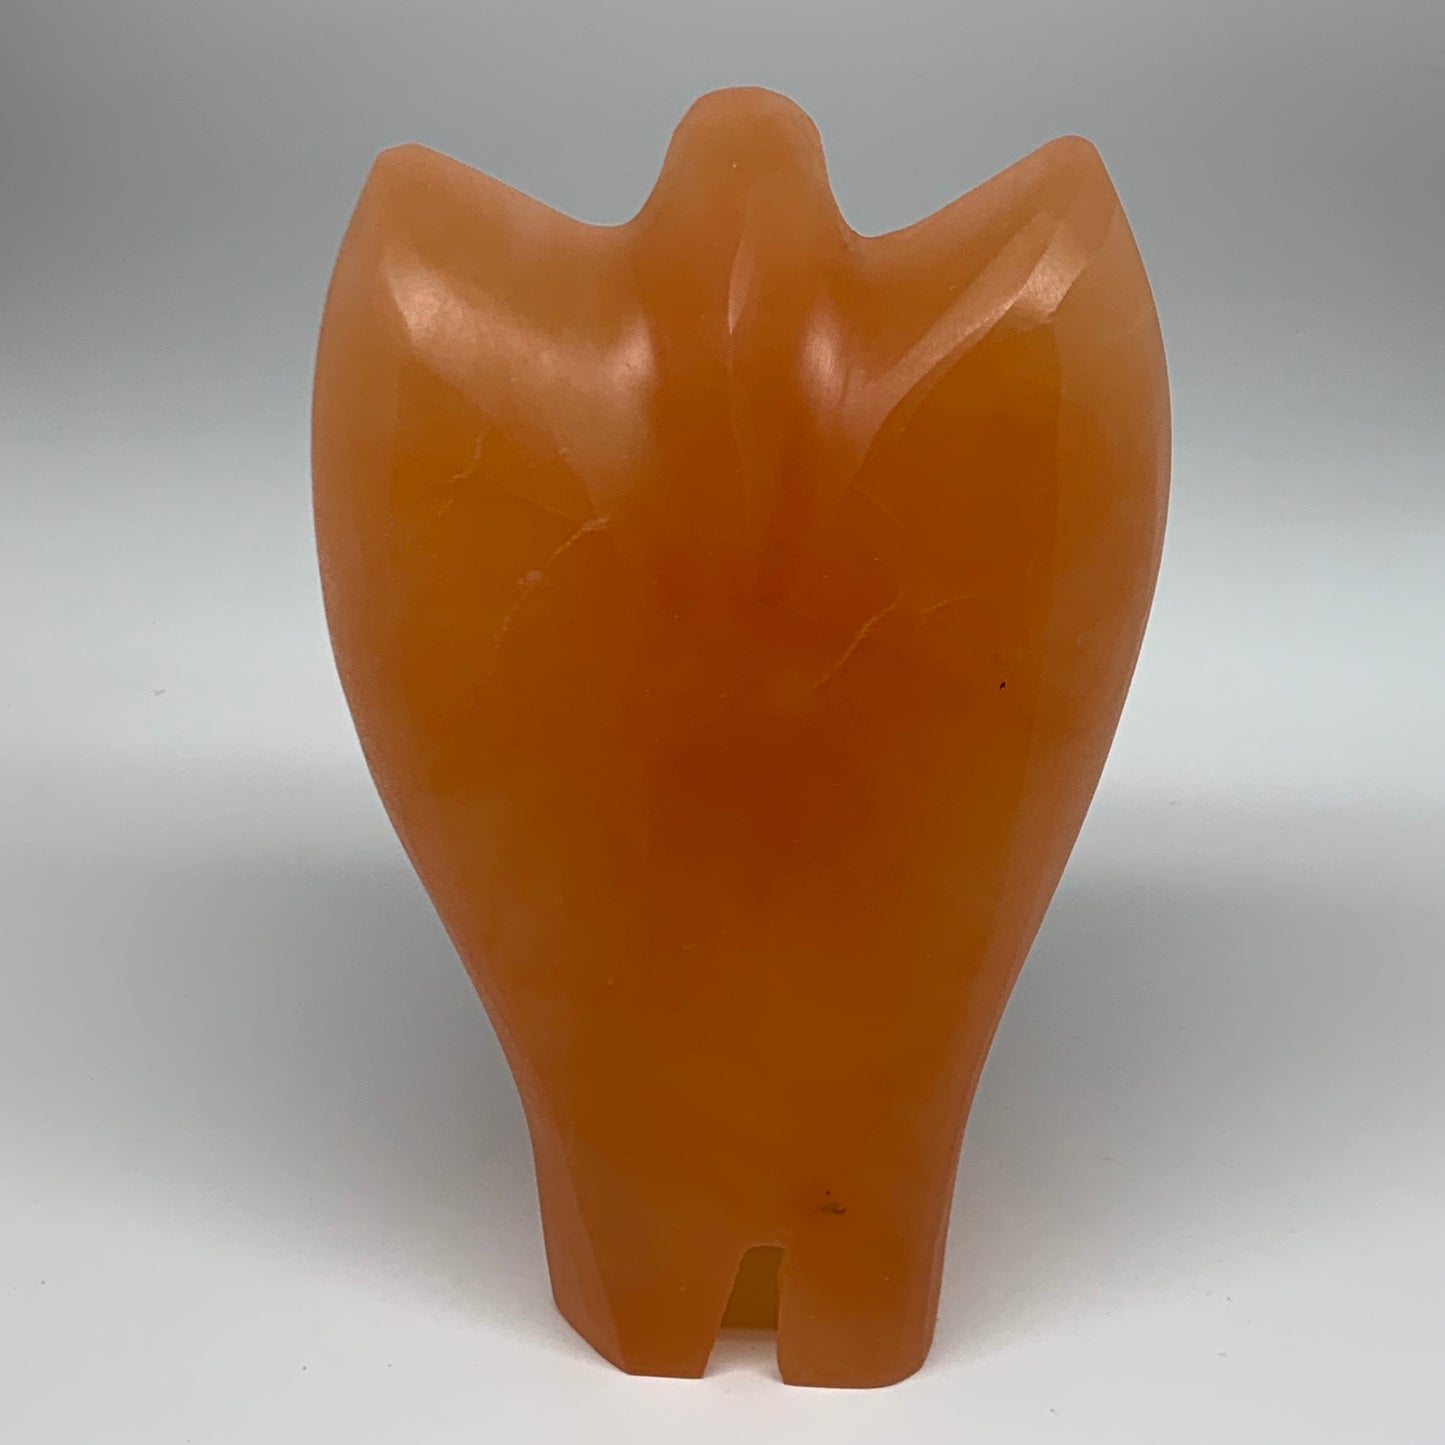 2140g, 8"x5.1"x3" Orange Selenite (Satin Spar) Angel Lamps @Morocco,B9445